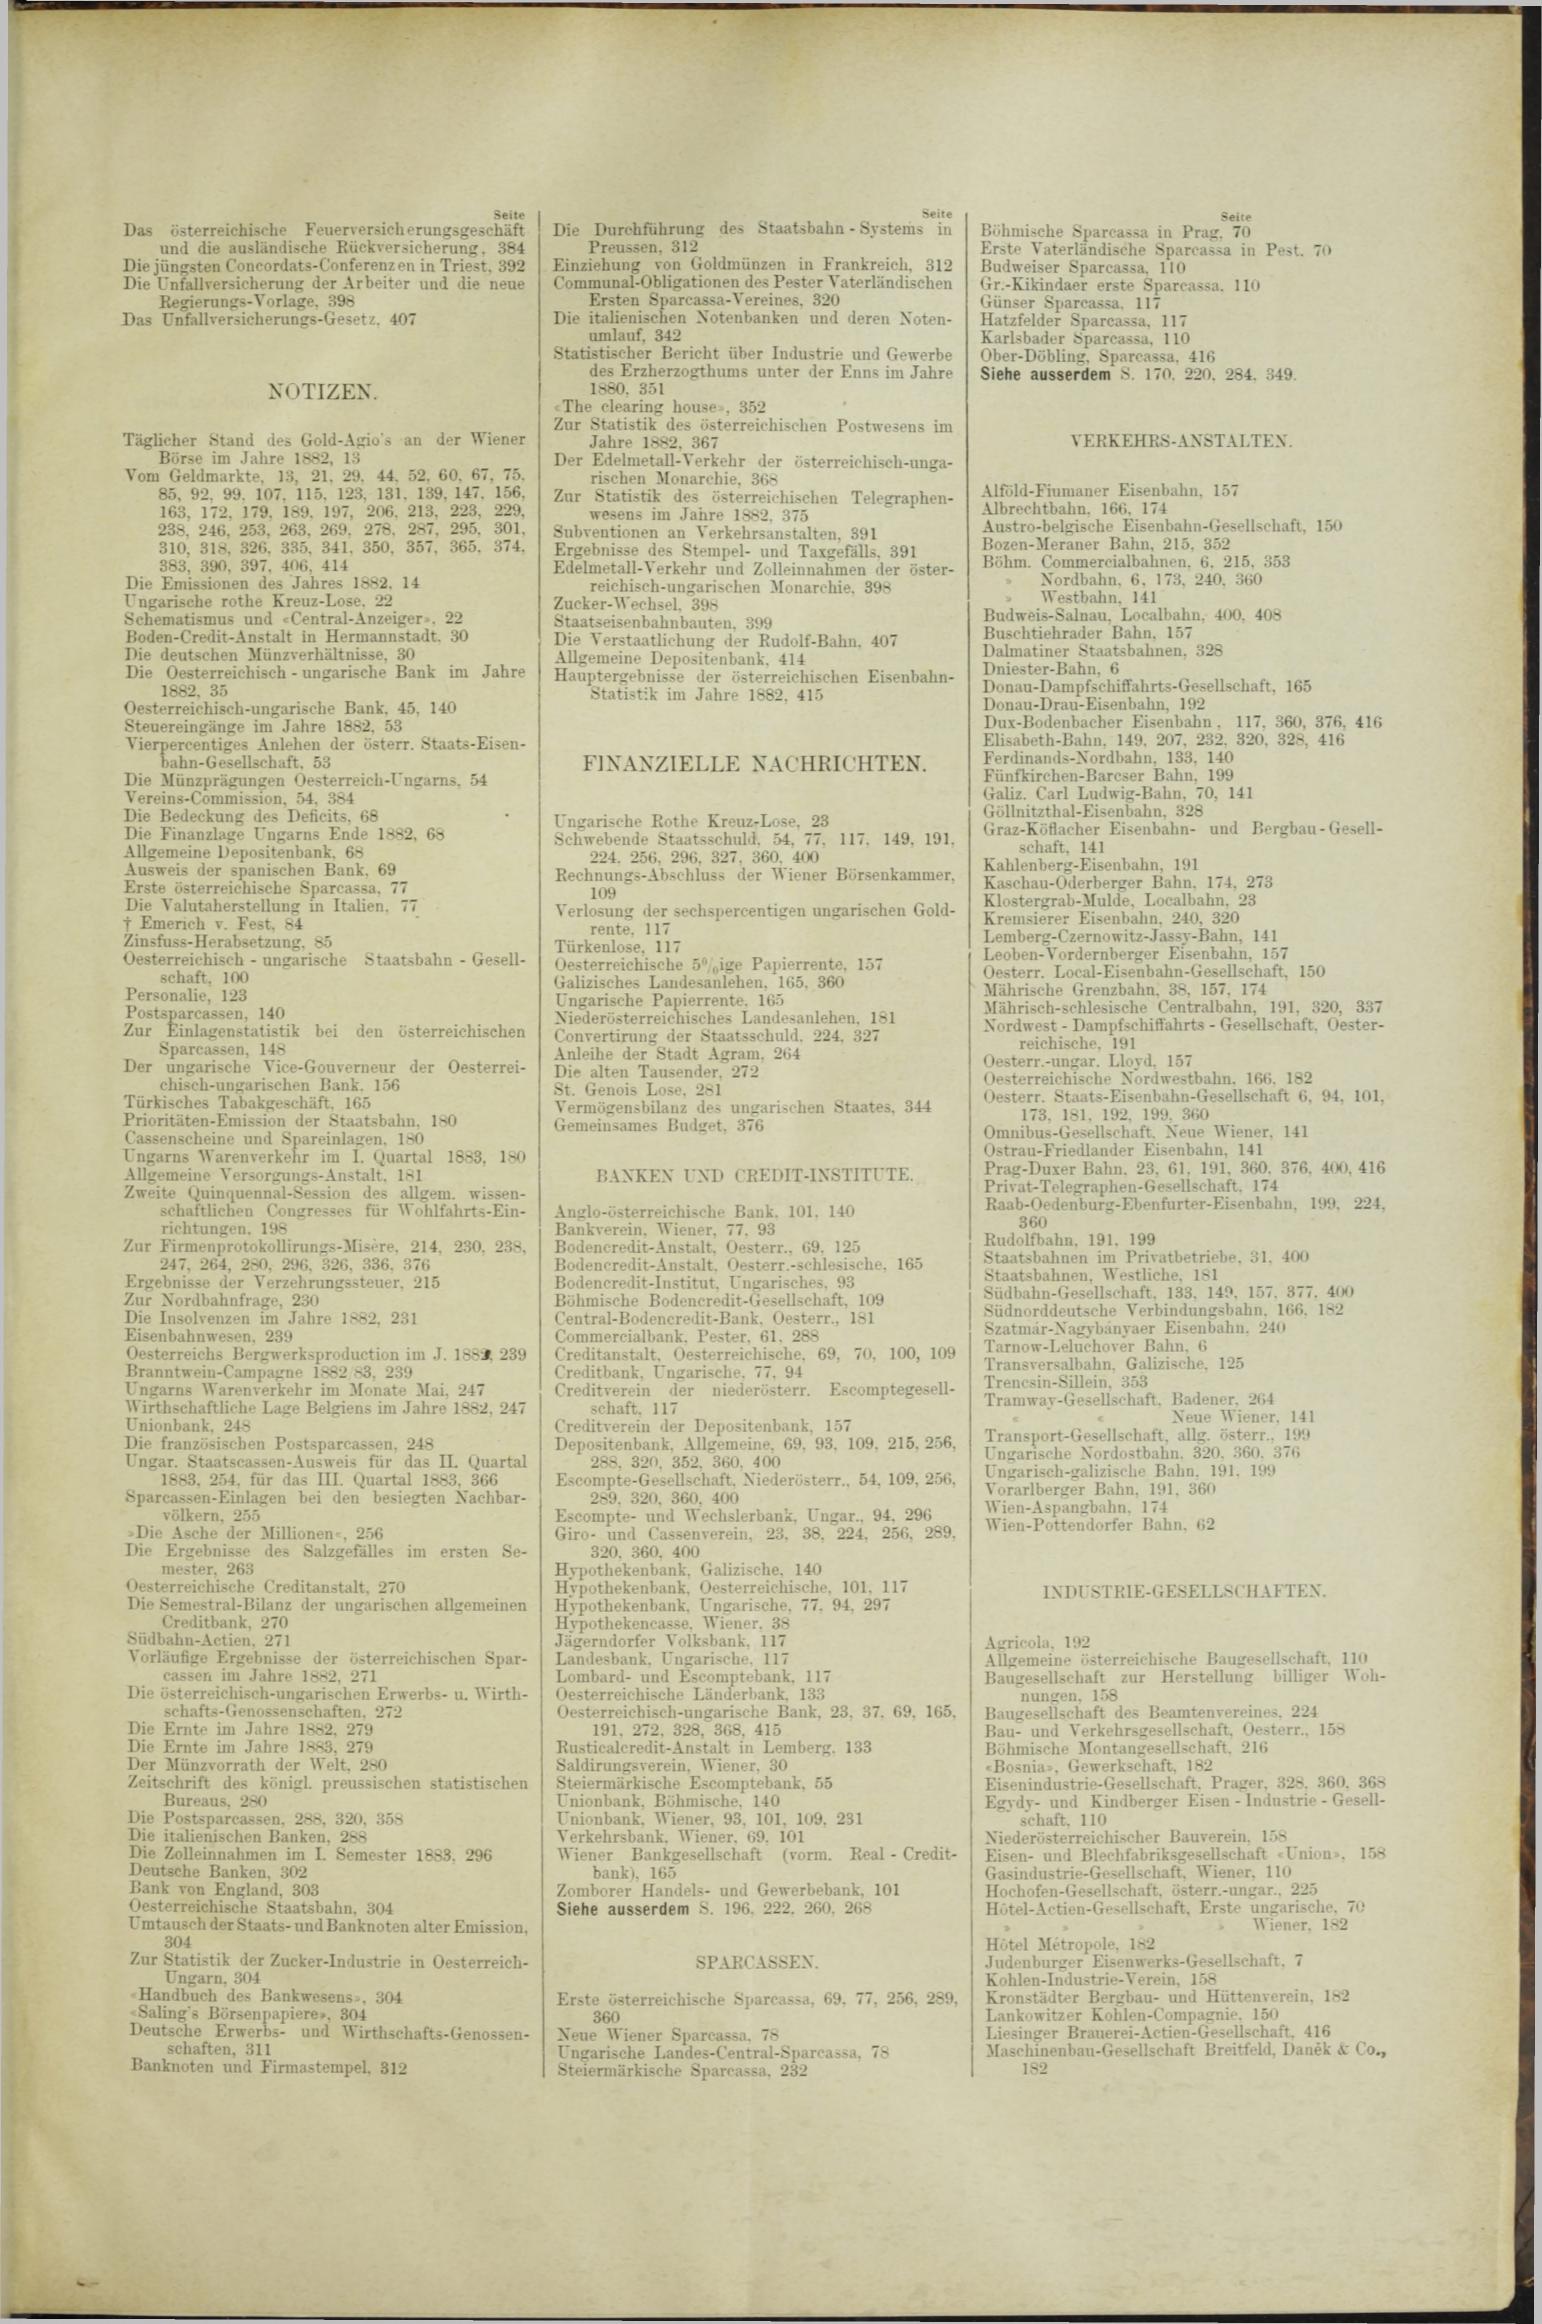 Der Tresor 29.11.1883 - Seite 11